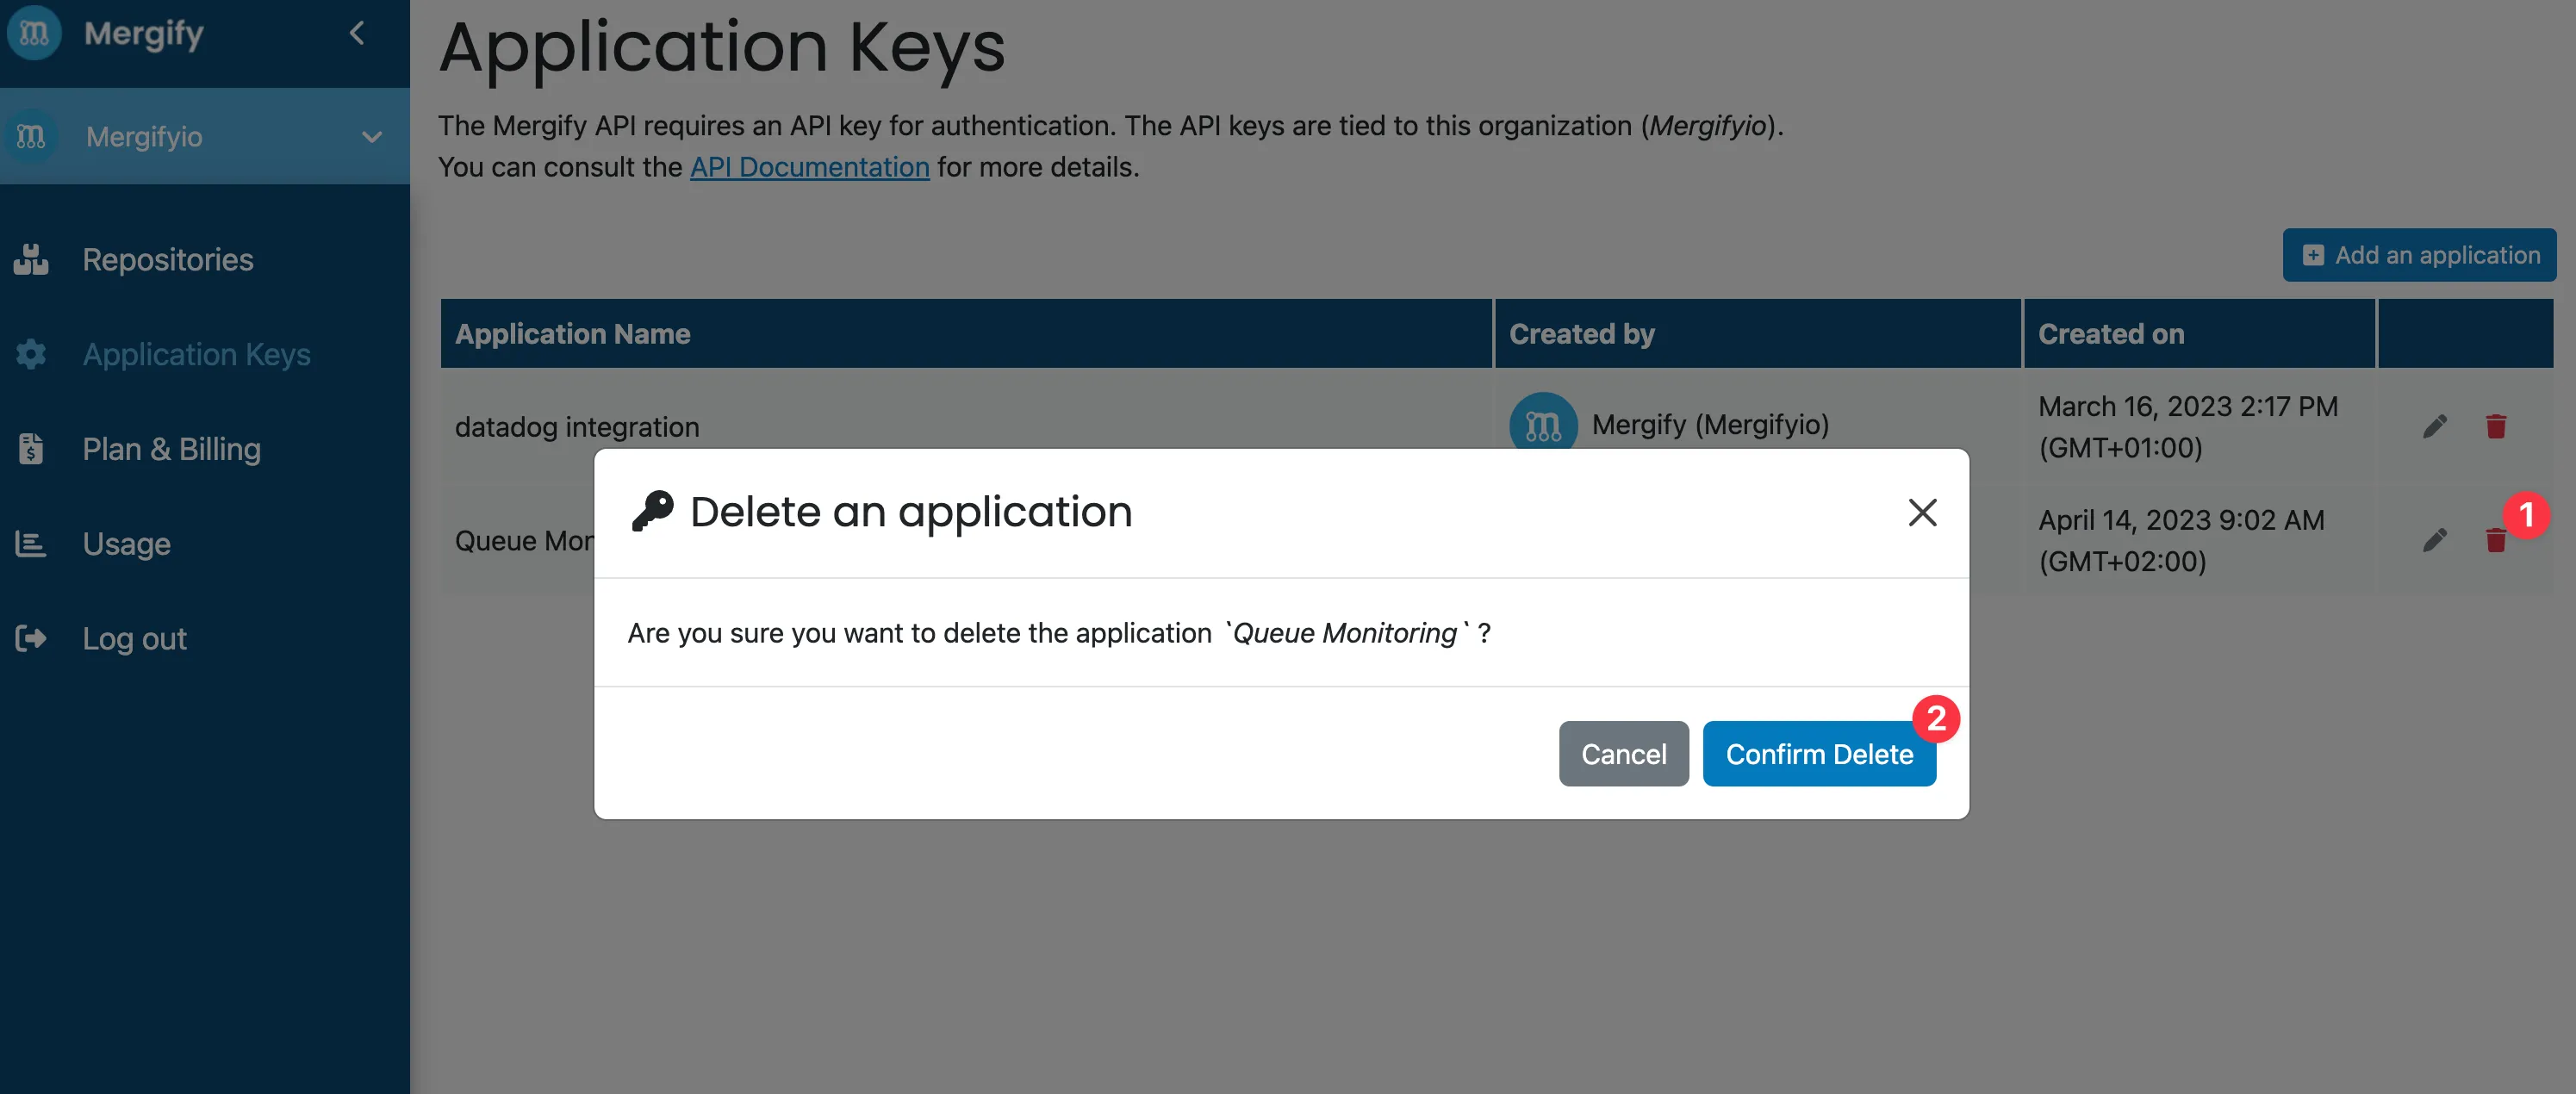 Delete application key